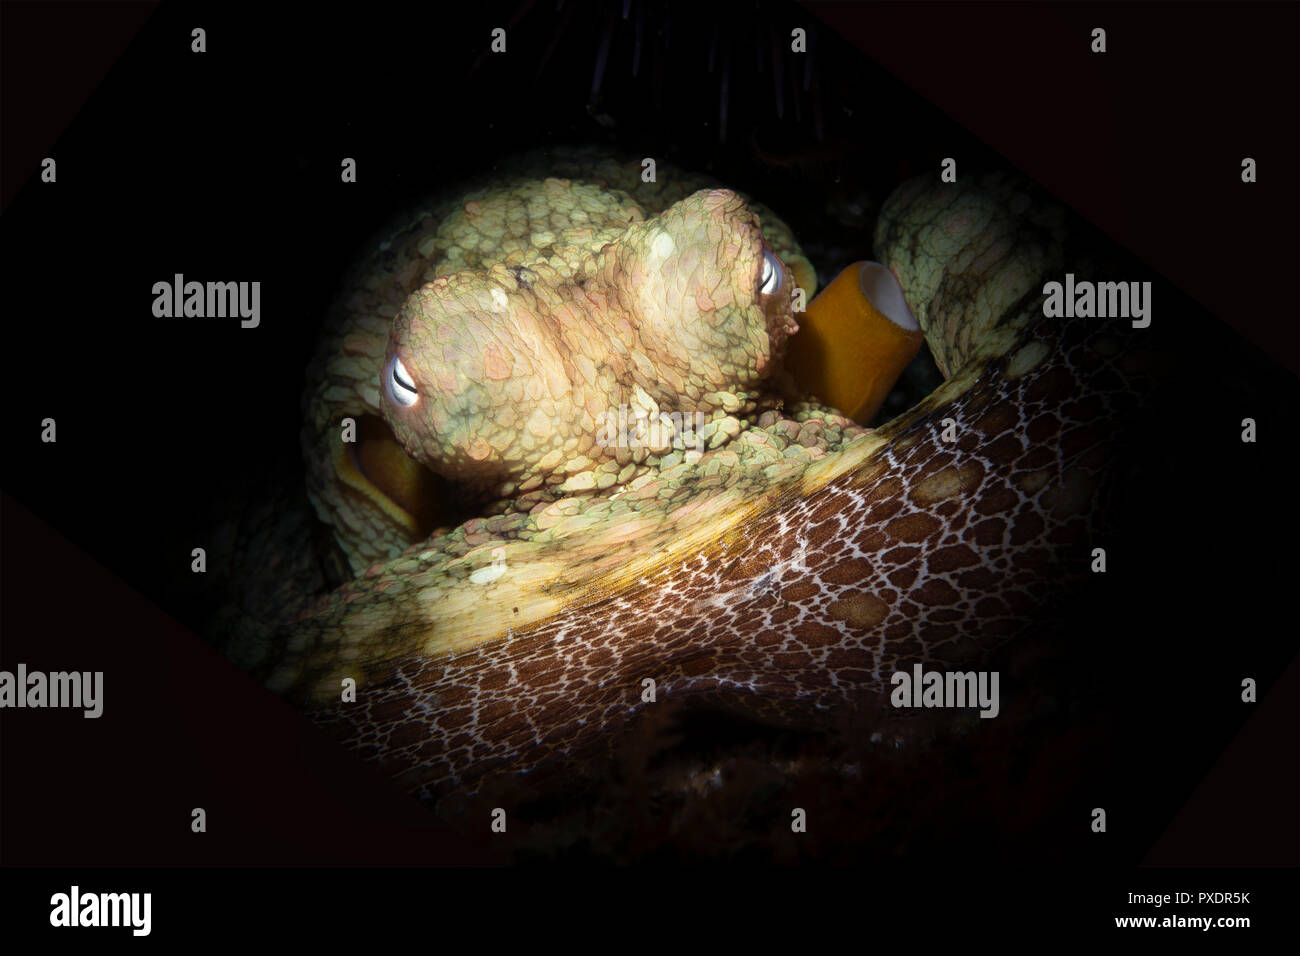 Ein niedliches Octopus liegt bewegungslos in Spalt, wie es änderungen Farben in mit dem Hintergrund zu verschmelzen. Schuss mit einer leichten snoot Auge des Tieres zu isolieren f Stockfoto